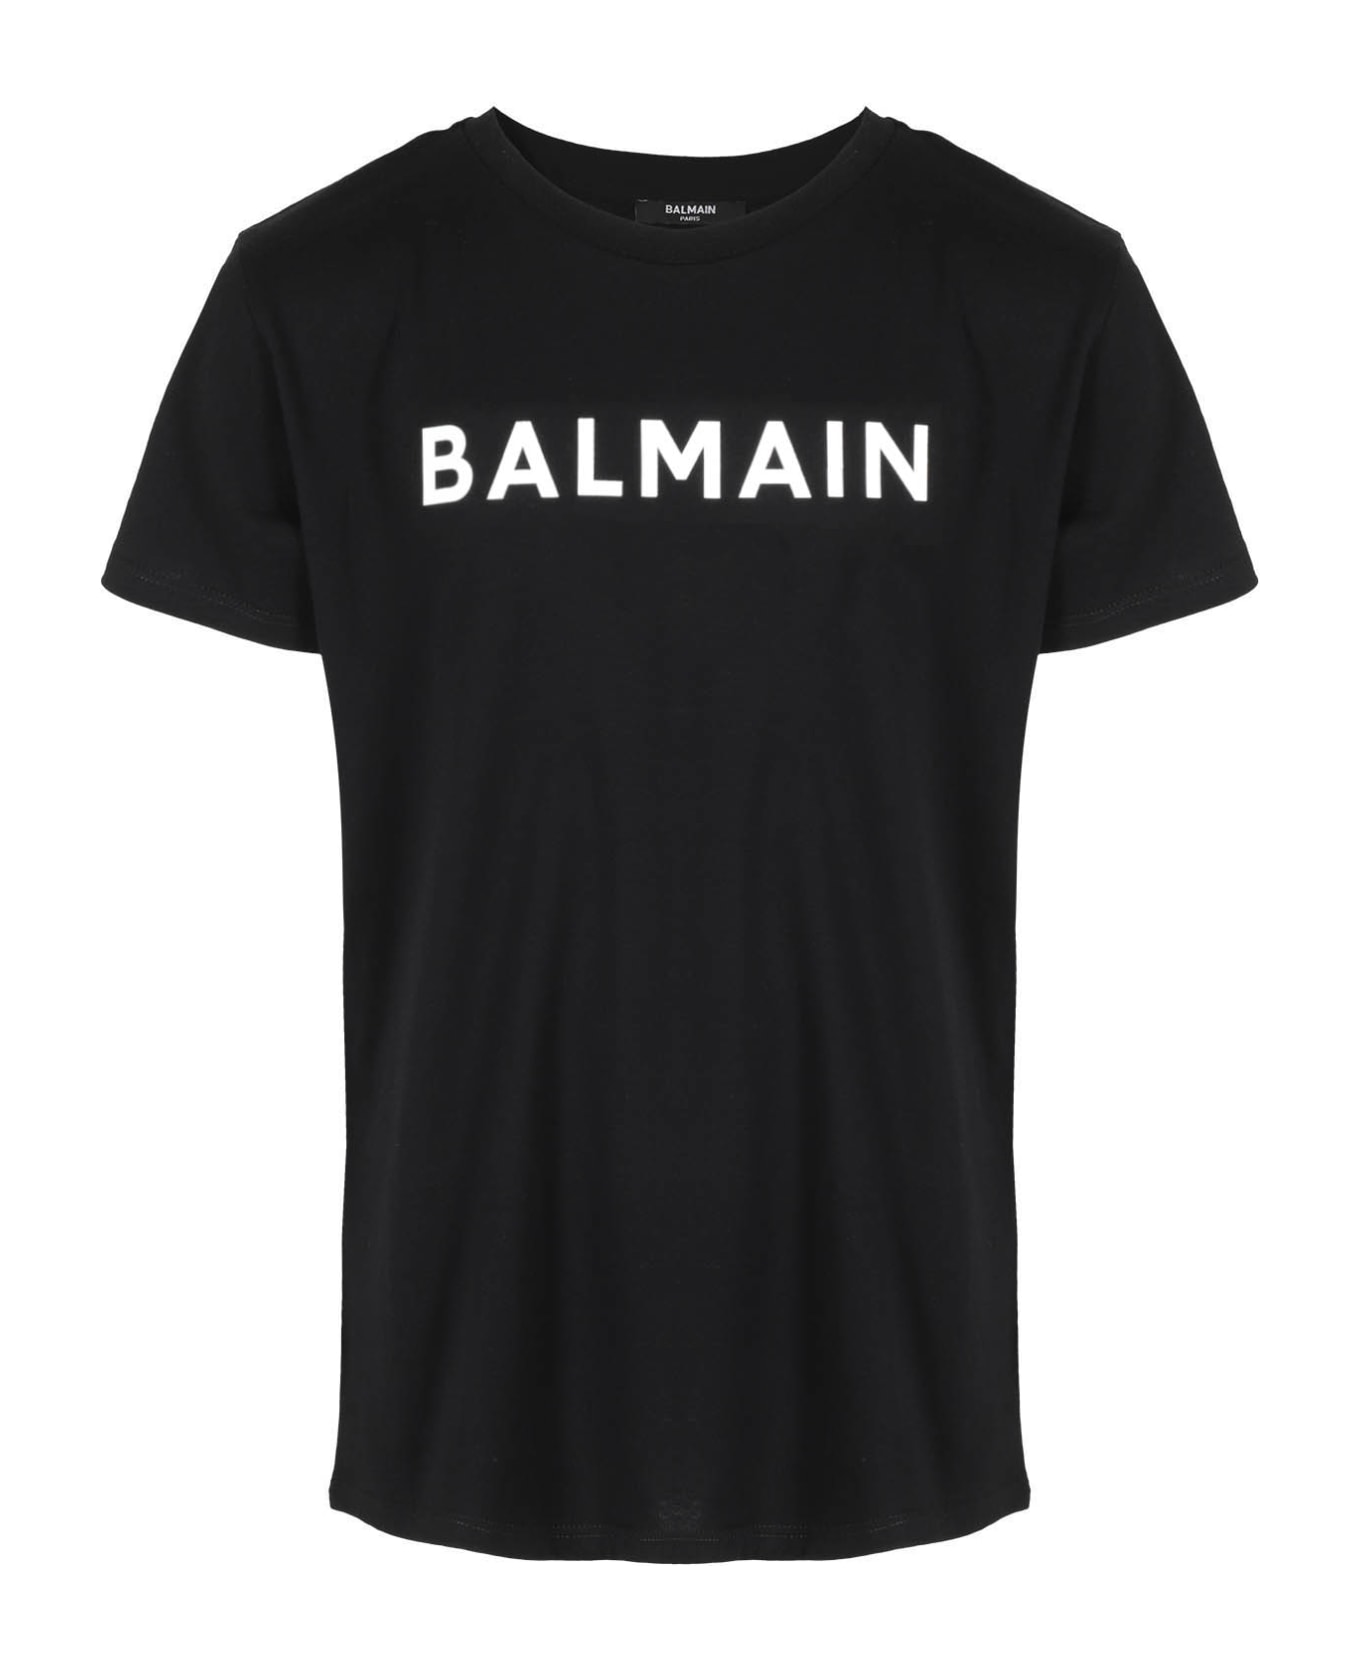 Balmain Tshirt - Av Black Ivory